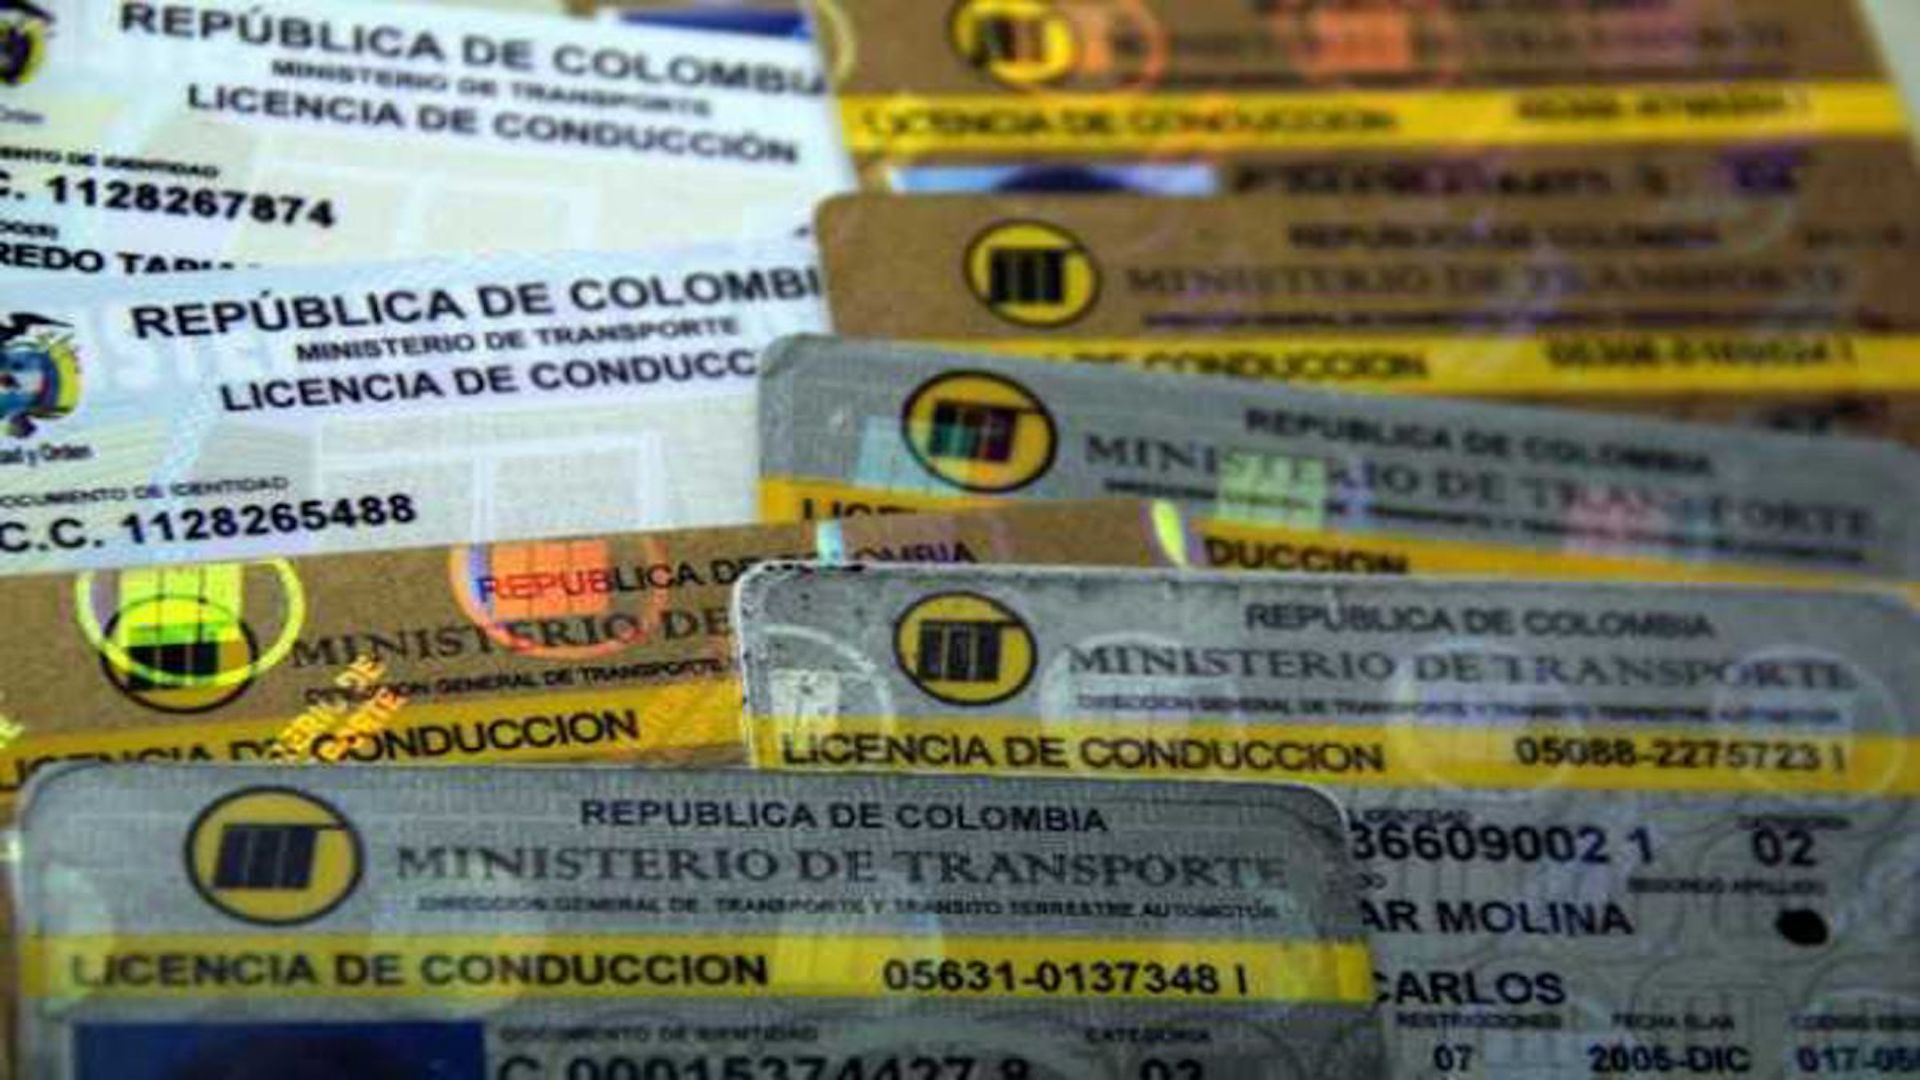 Los países donde se puede conducir con la licencia de conducción colombiana (1)